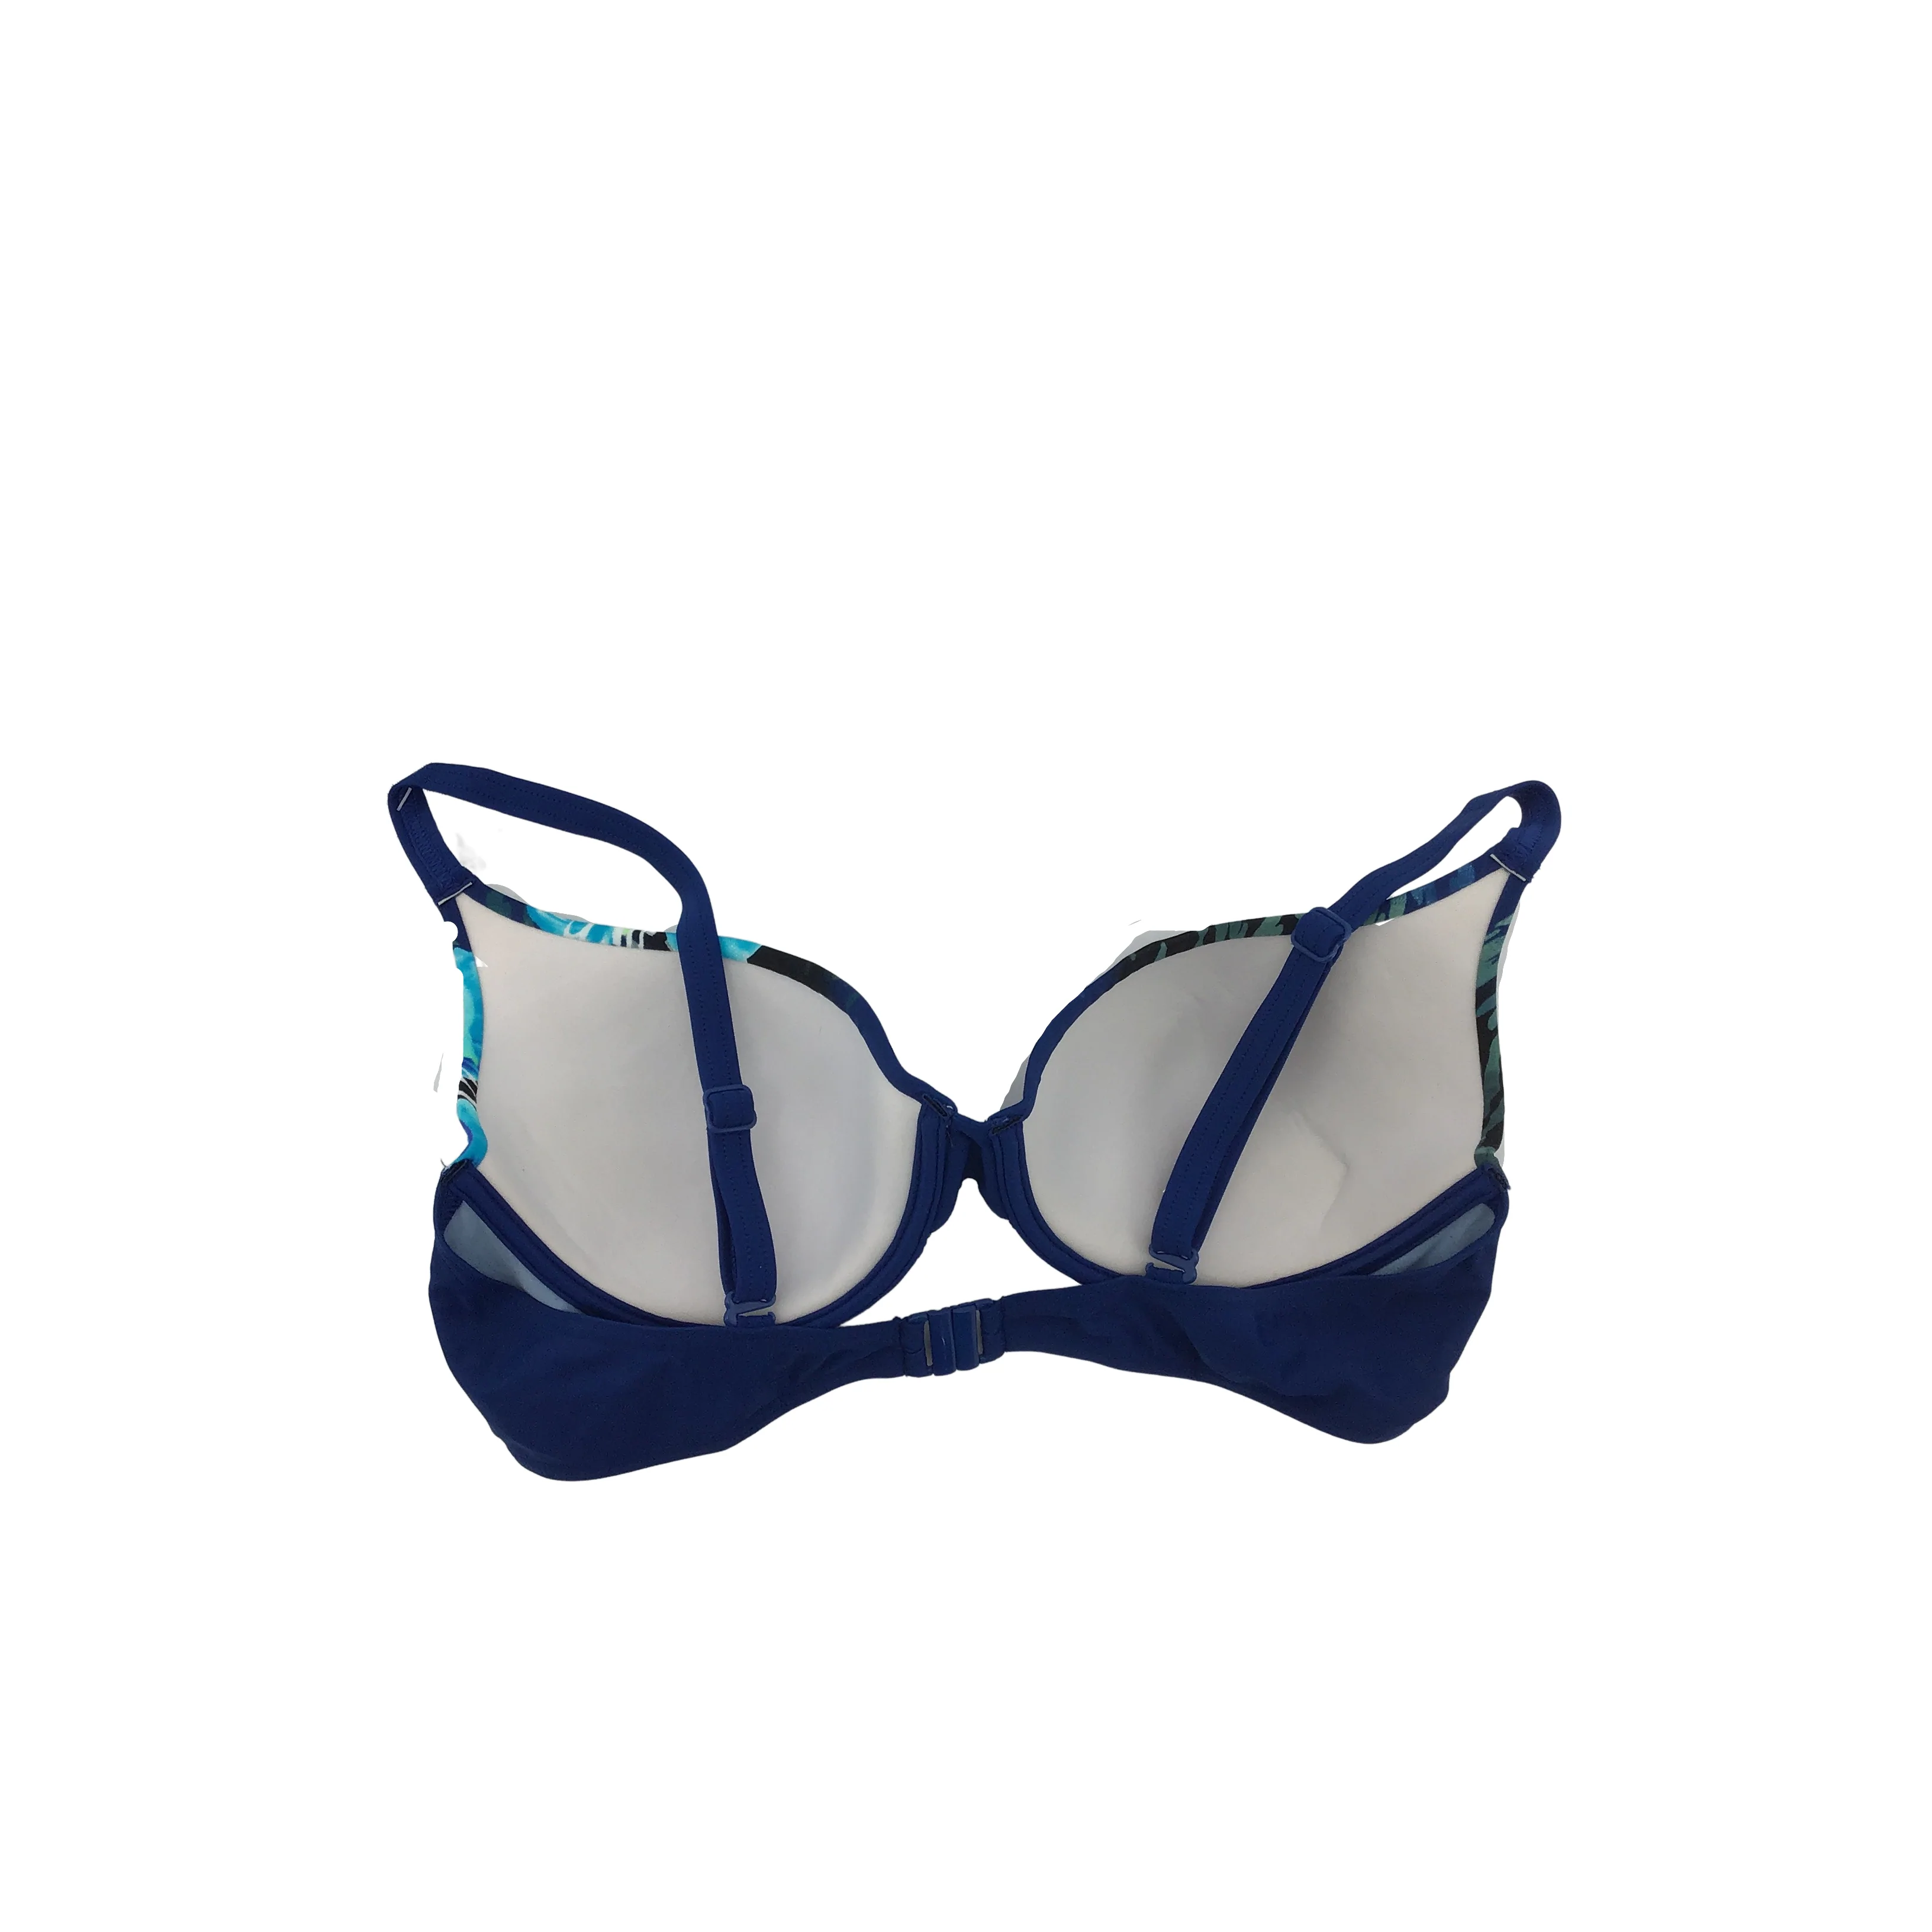 Naturana Women's Bathing Suit: Bikini/ 2 Piece/ Blue / 12 B cup